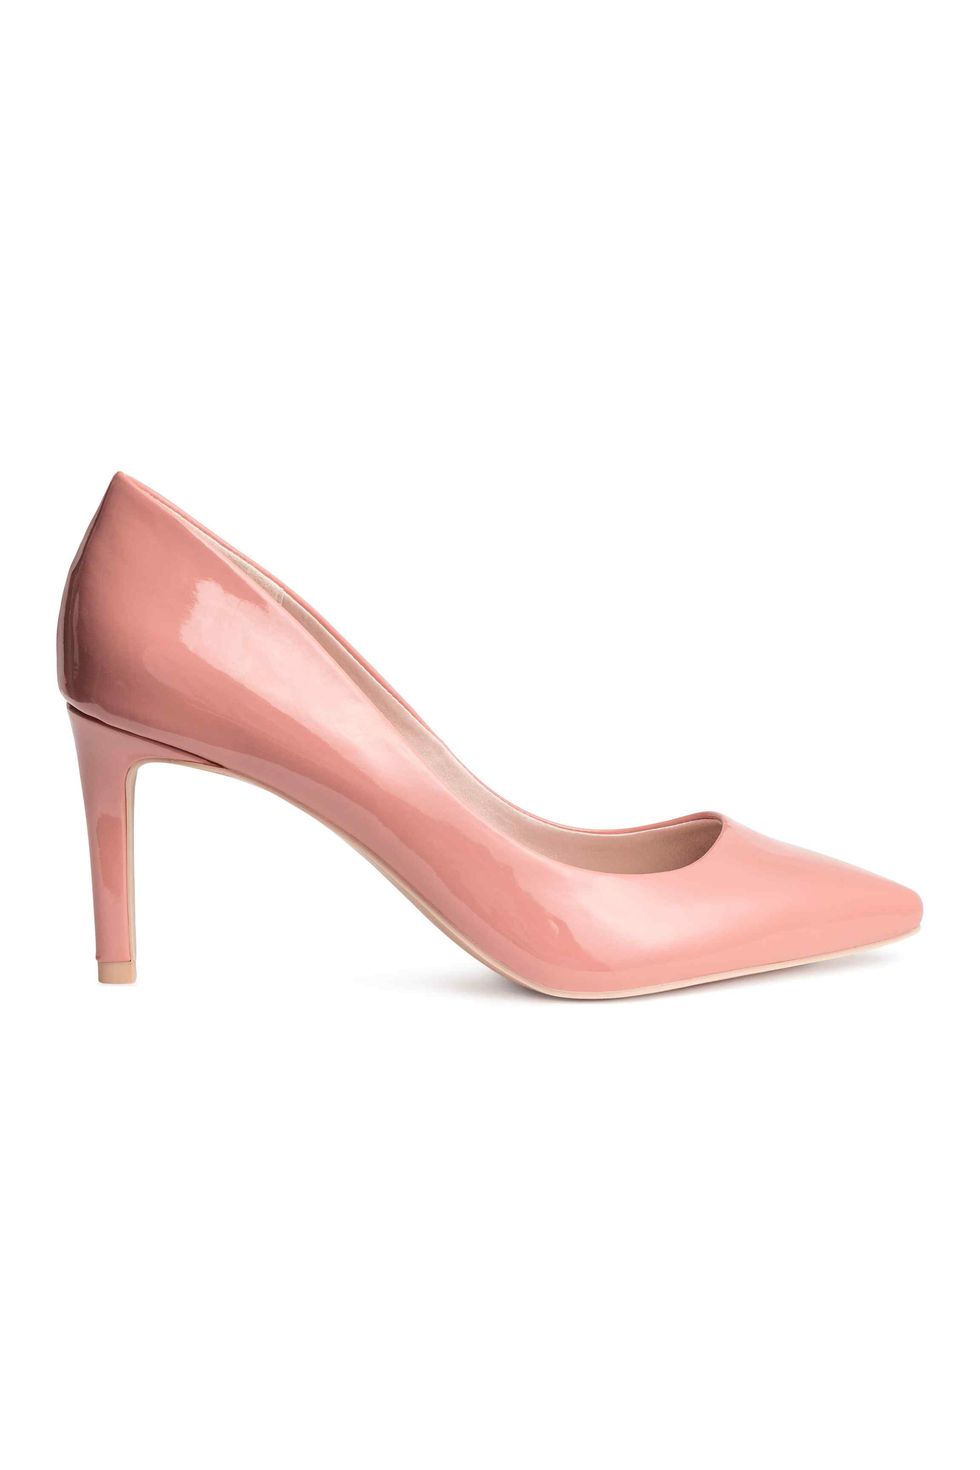 Brown, Pink, High heels, Tan, Basic pump, Beige, Maroon, Liver, Bridal shoe, Foot, 